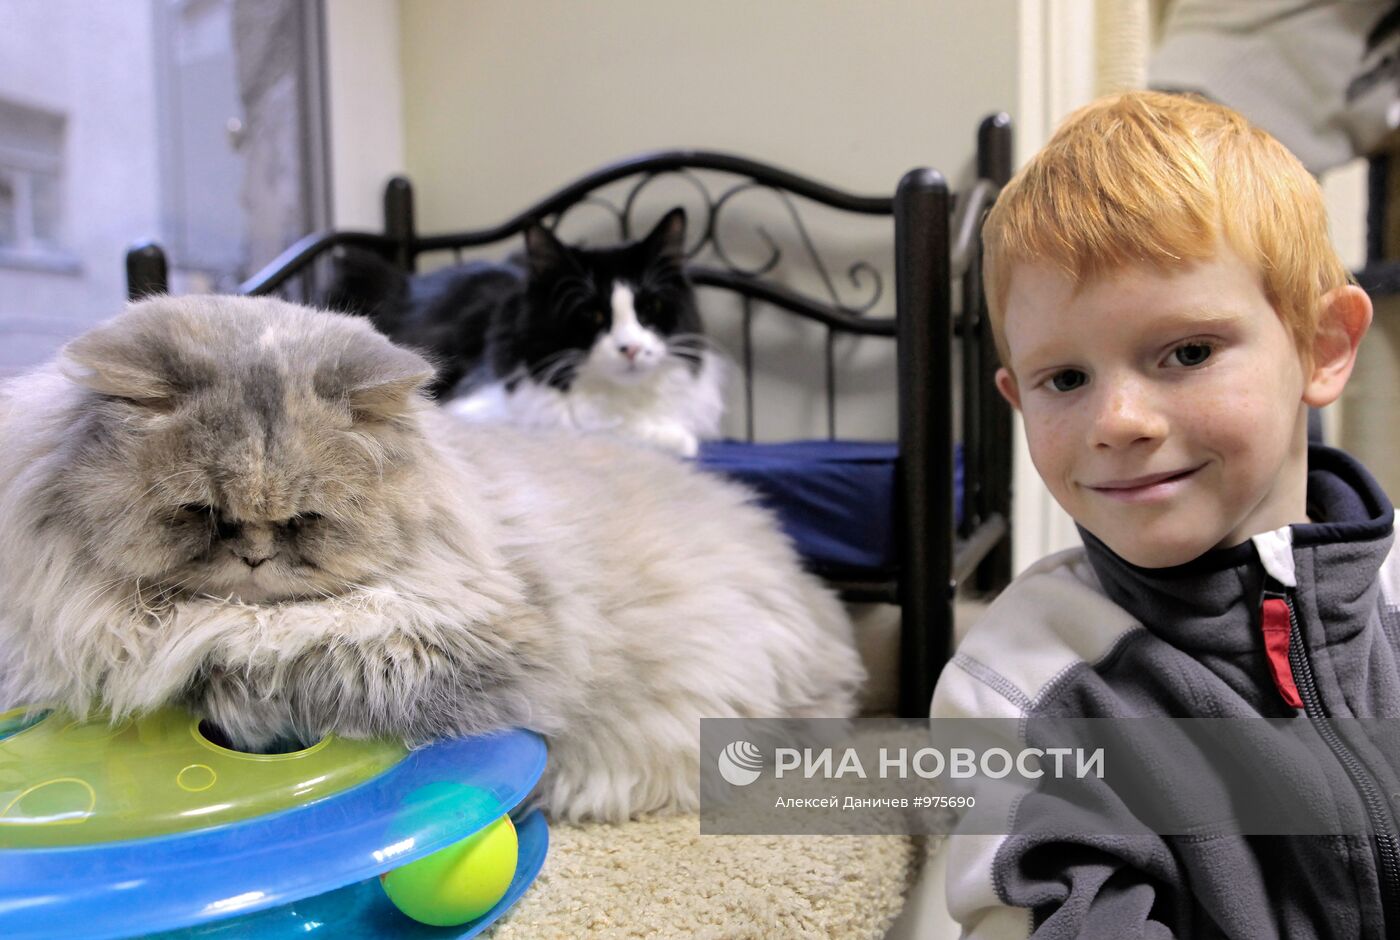 Первое котокафе "Республика кошек" открылось в Санкт-Петербурге